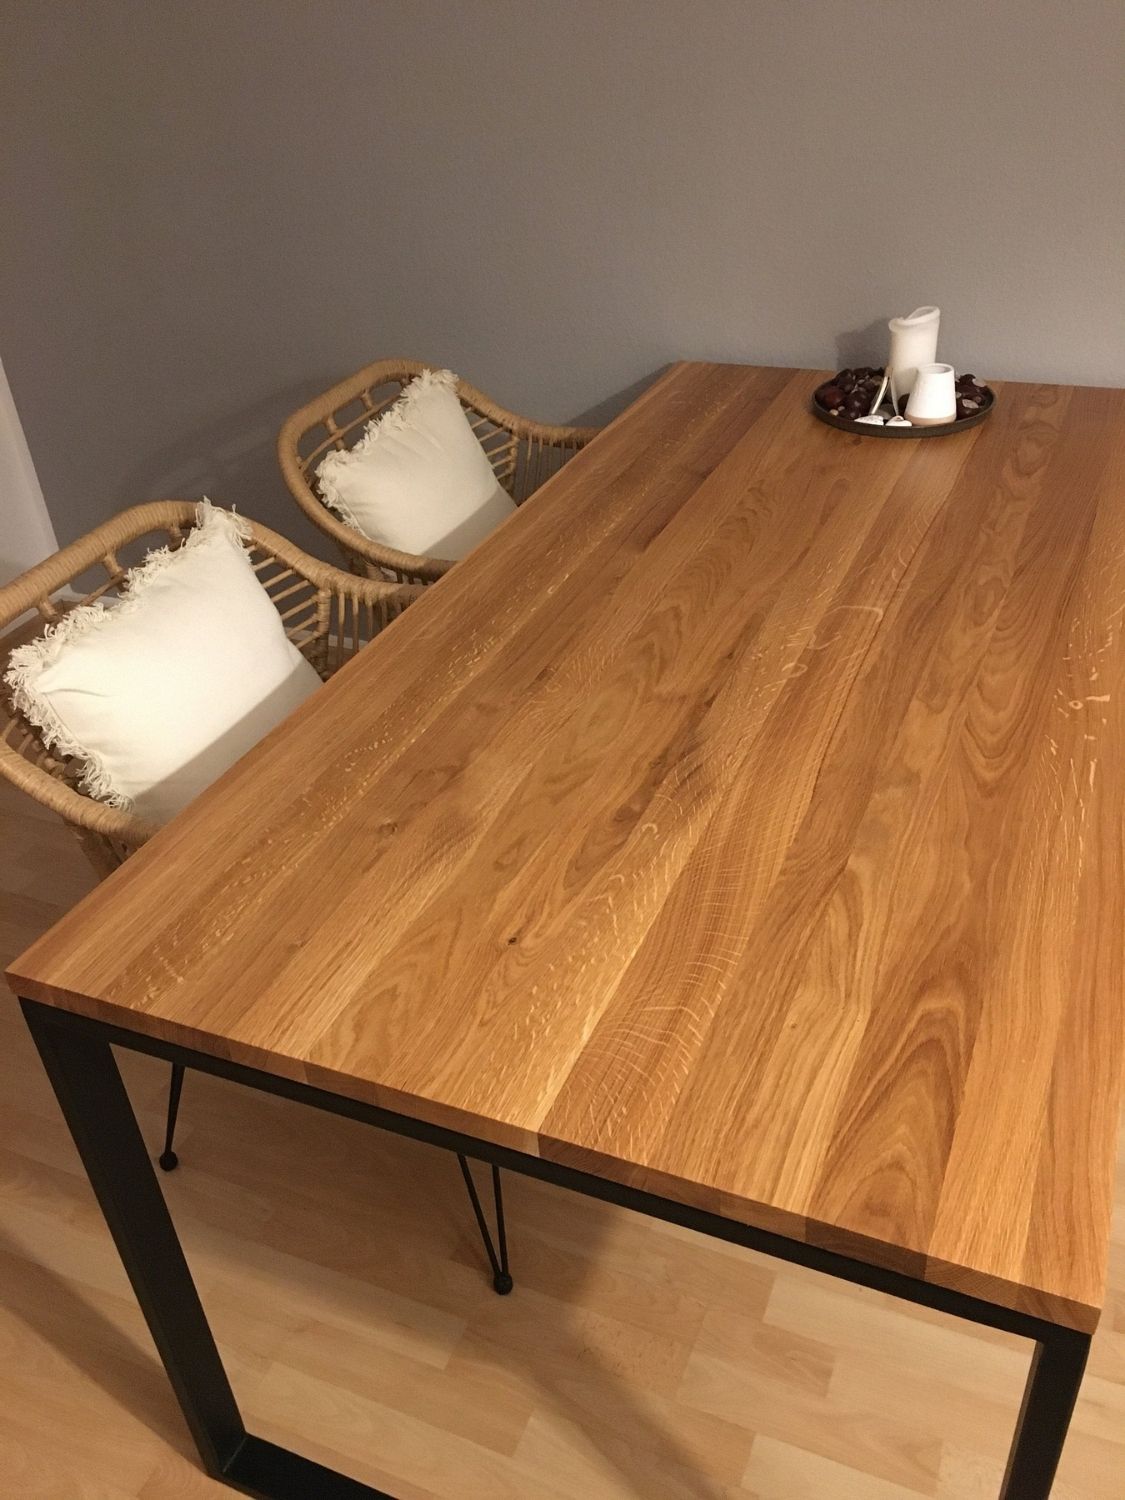 Modern handmade oak table in dining area